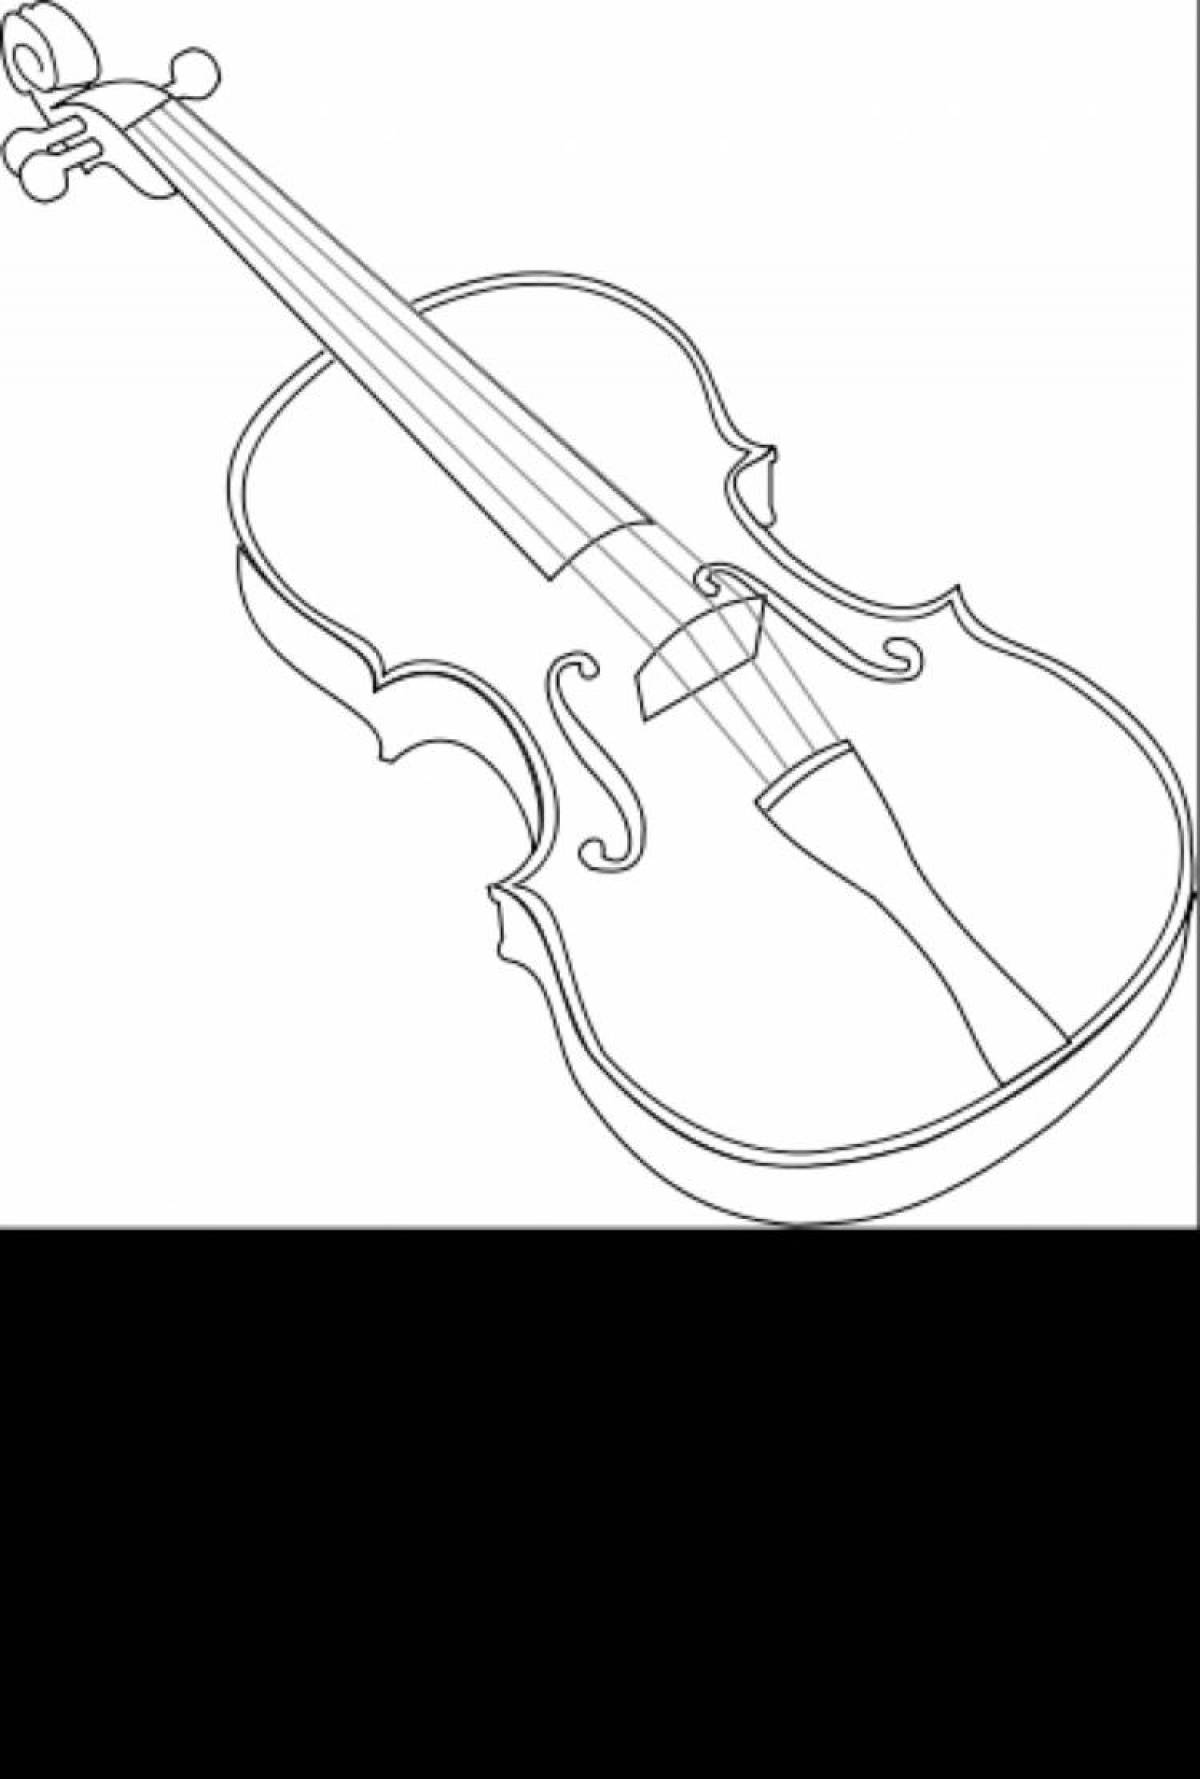 Яркая страница раскраски скрипки